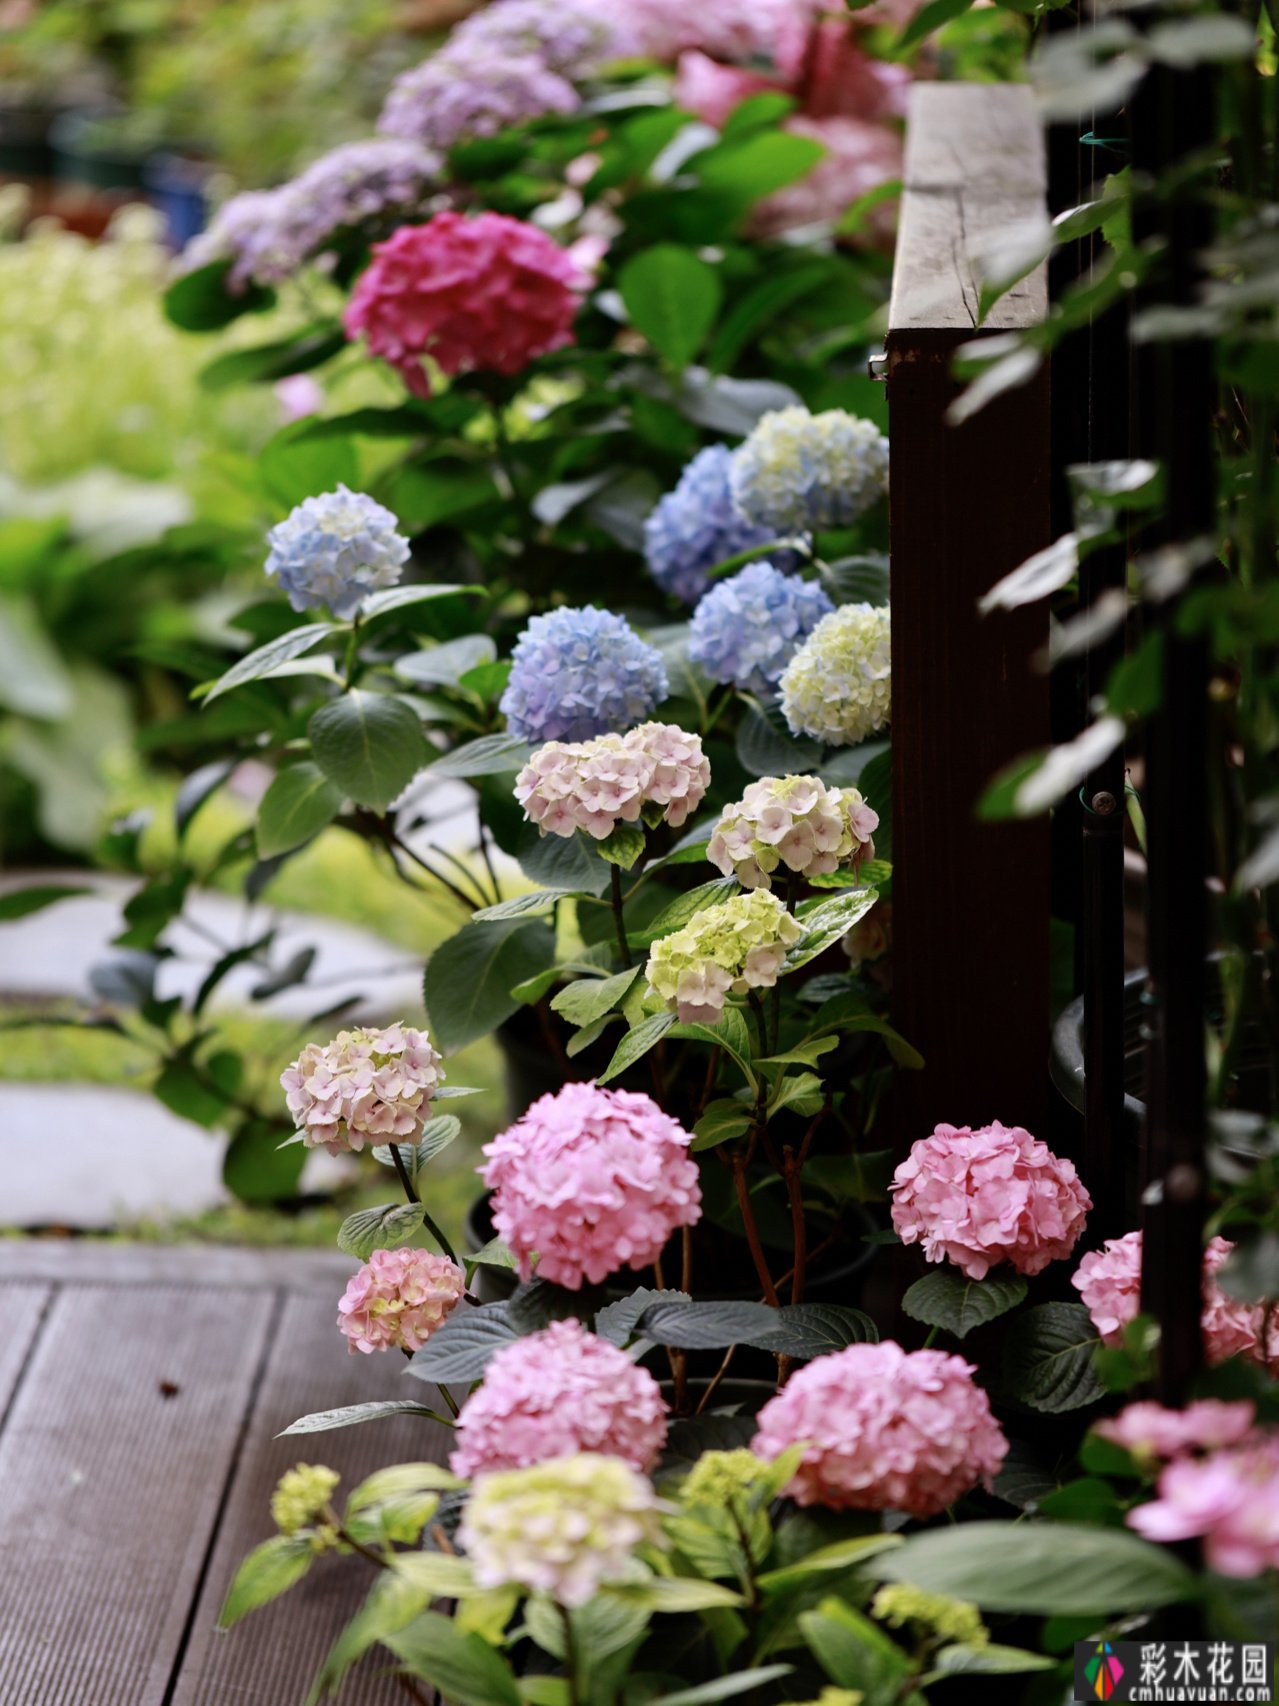 20㎡迷你院子，两年种了100多盆花，小小的空间也能创造出超级美花园